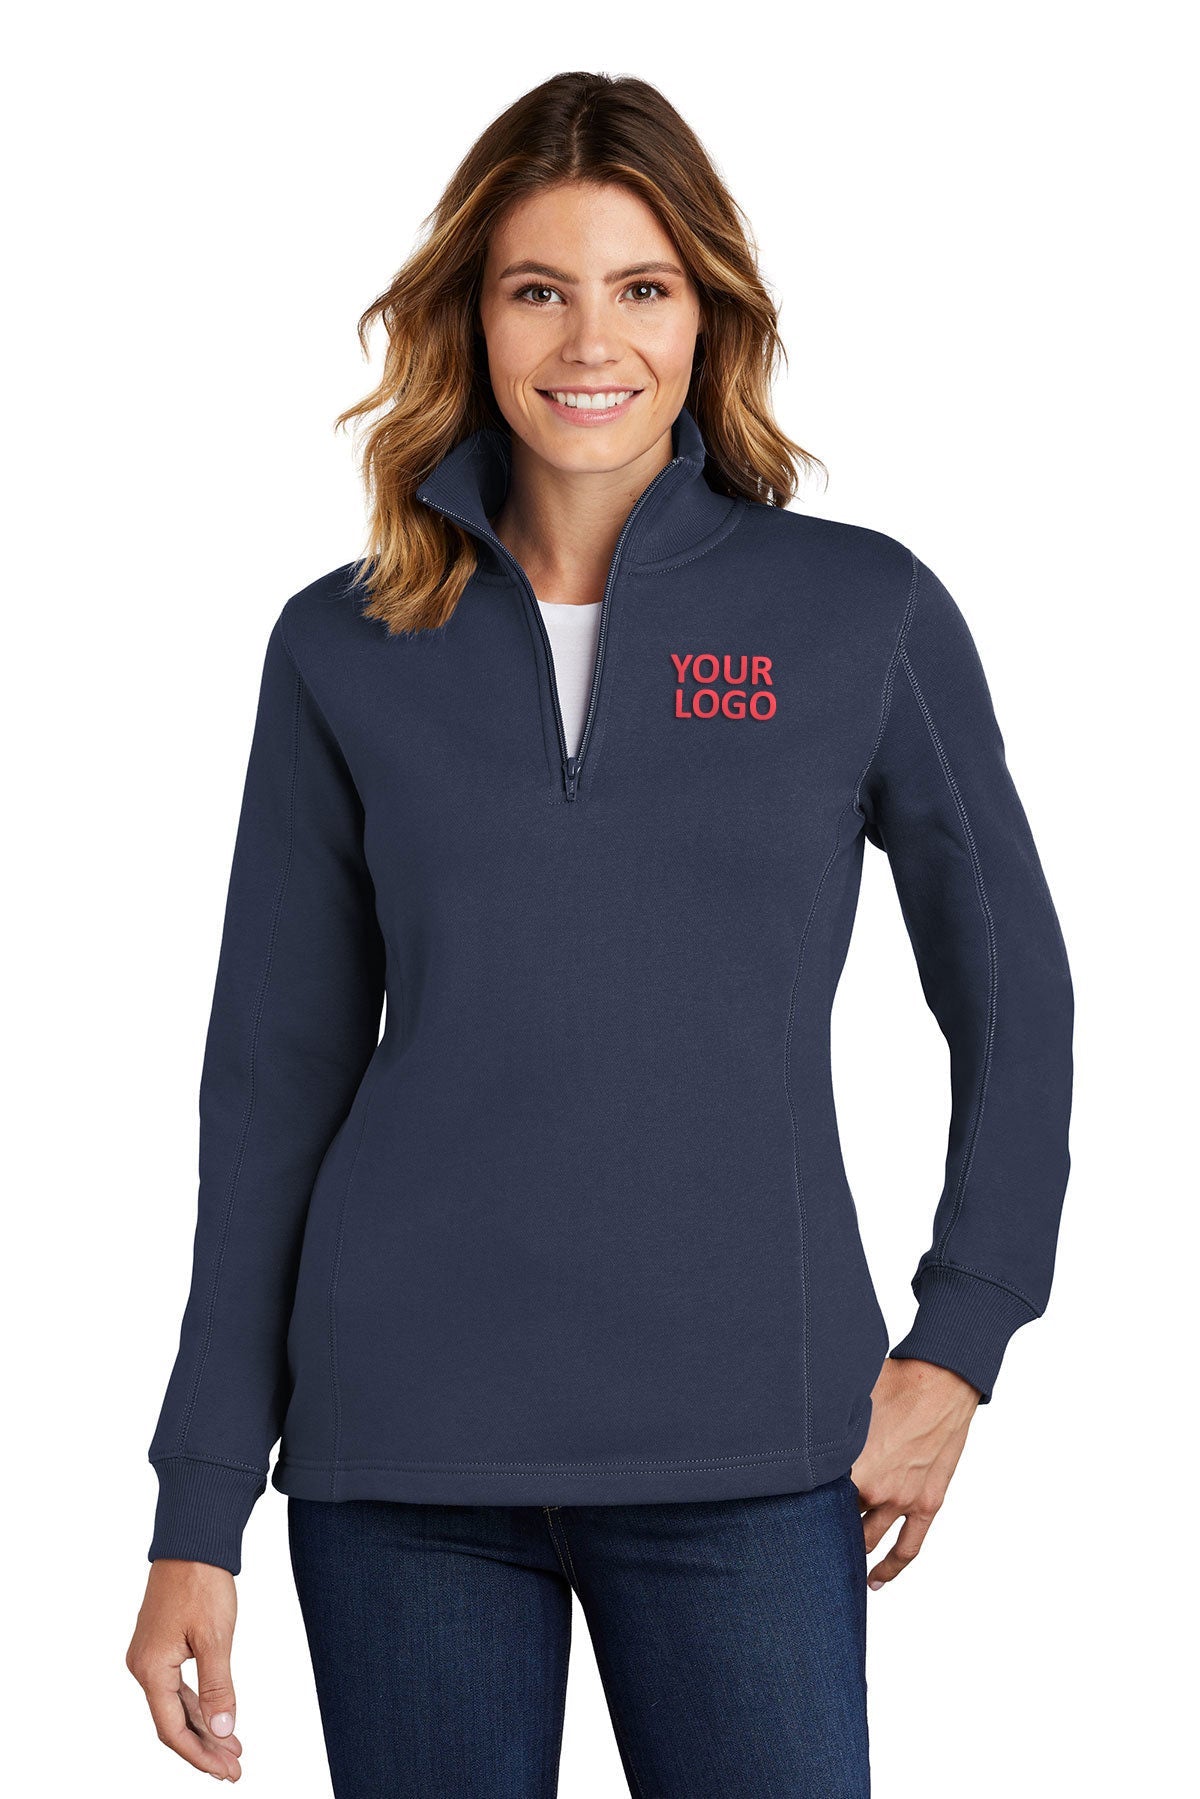 Sport-Tek Ladies Customized 1/4-Zip Sweatshirts, True Navy